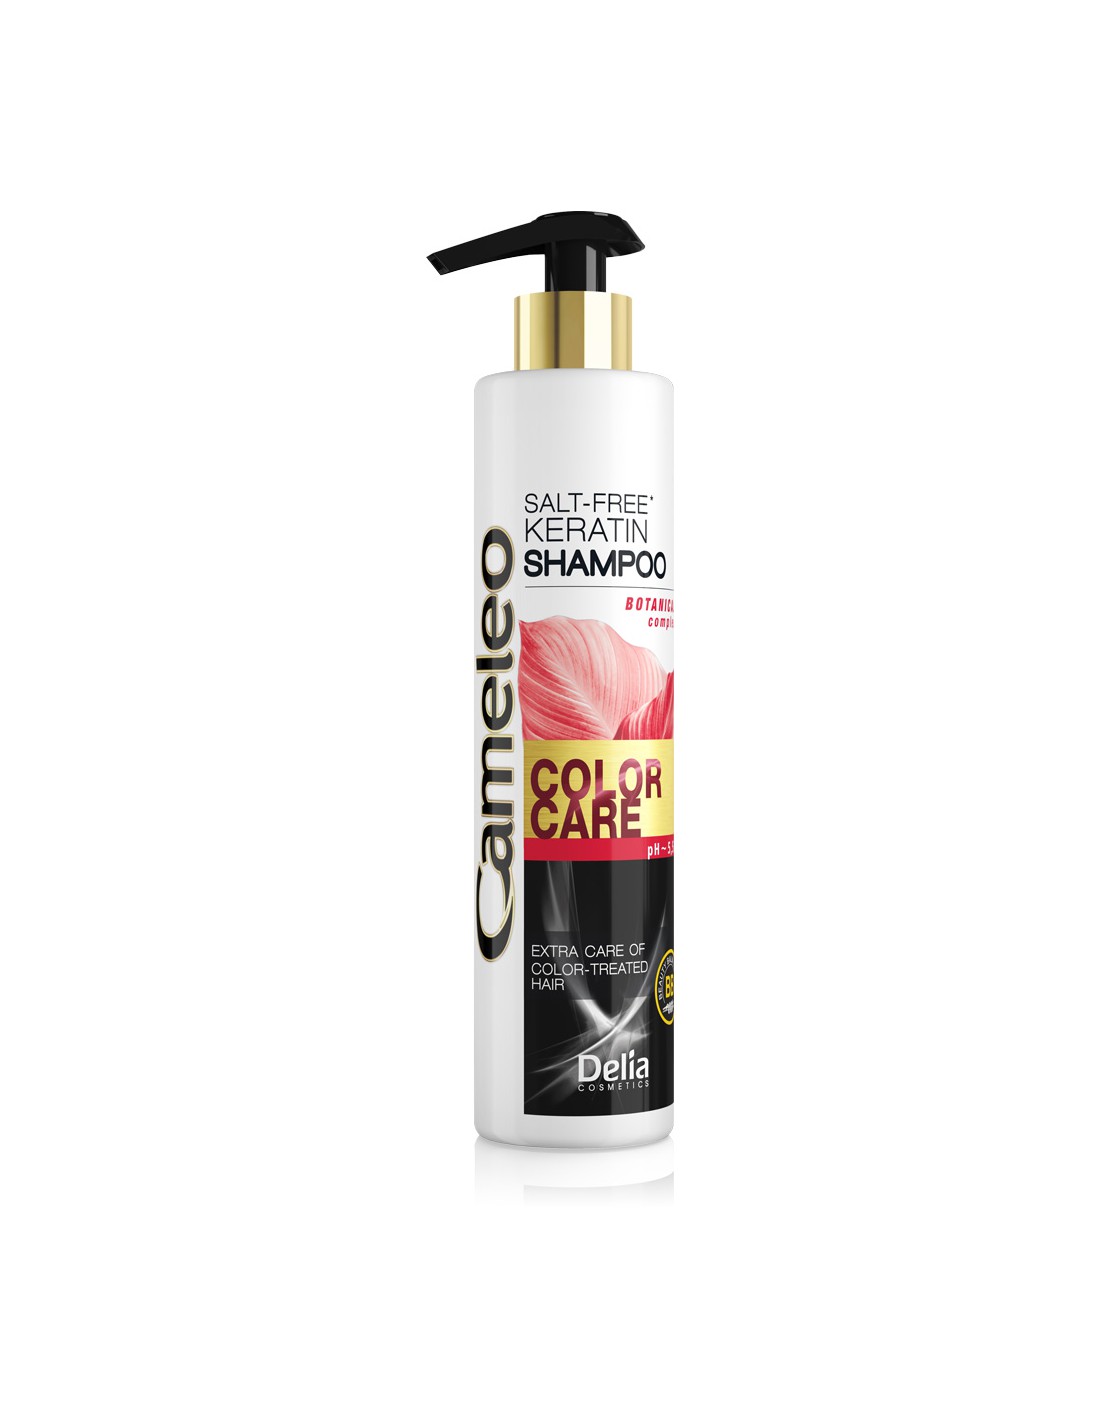 delia cosmetics cameleo szampon keratynowy do włosów farbowanych 250ml